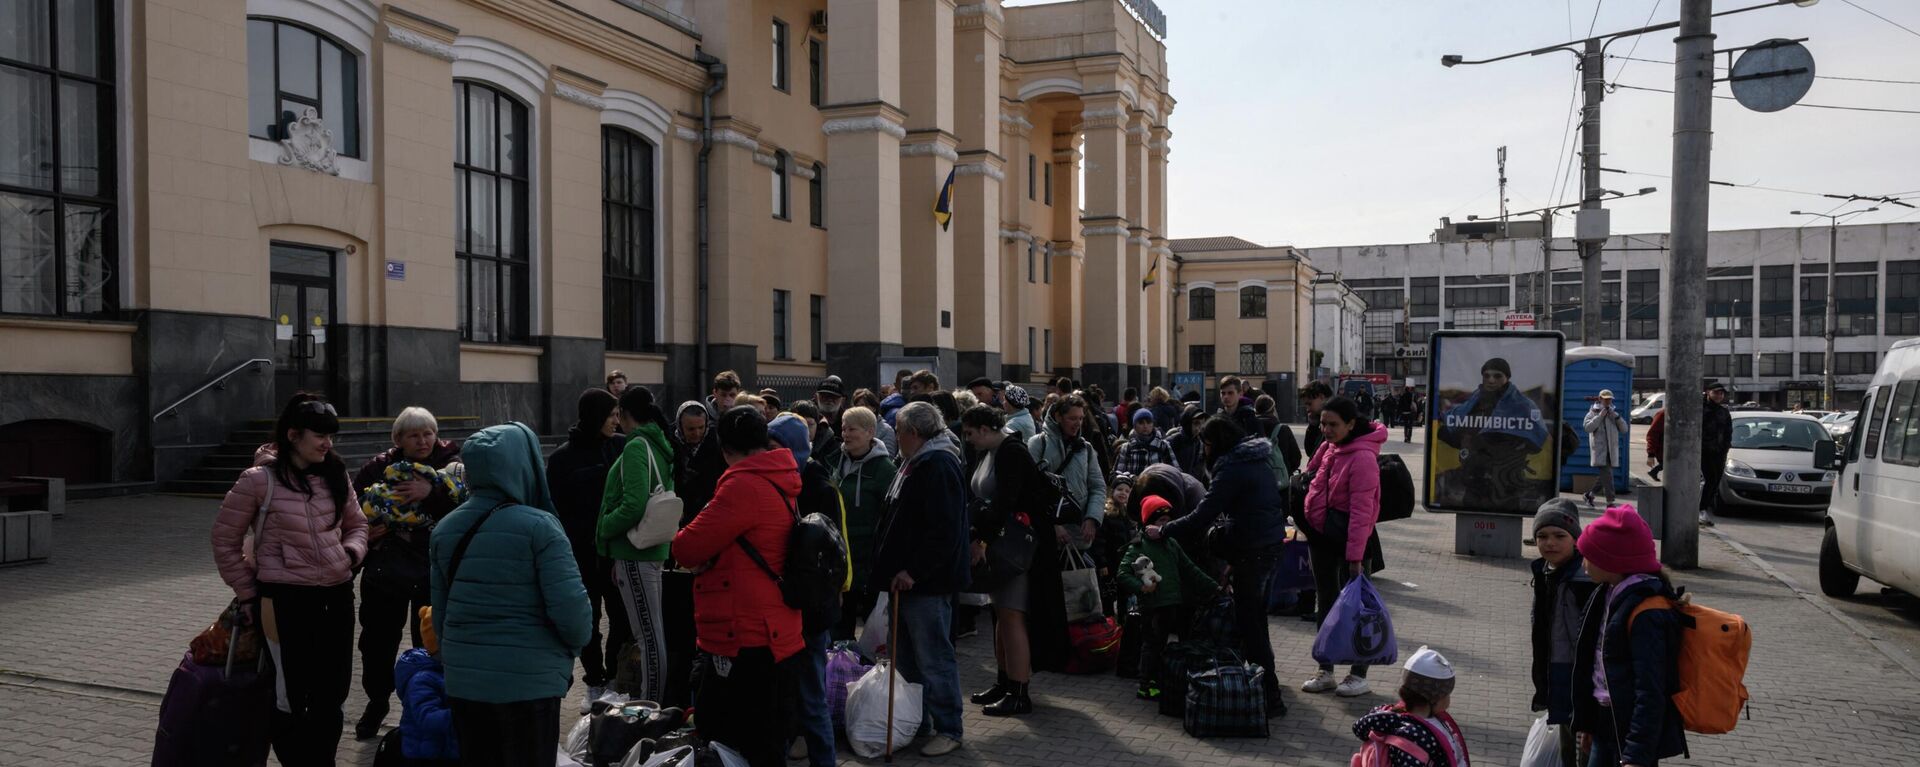 Deslocados internos se preparam para embarcar em um trem de evacuação que parte para Lvov, um dia depois de chegar como parte de um comboio humanitário da cidade sitiada de Mariupol, em uma estação ferroviária na cidade de Zaporozhie, em 22 de abril - Sputnik Brasil, 1920, 01.05.2022